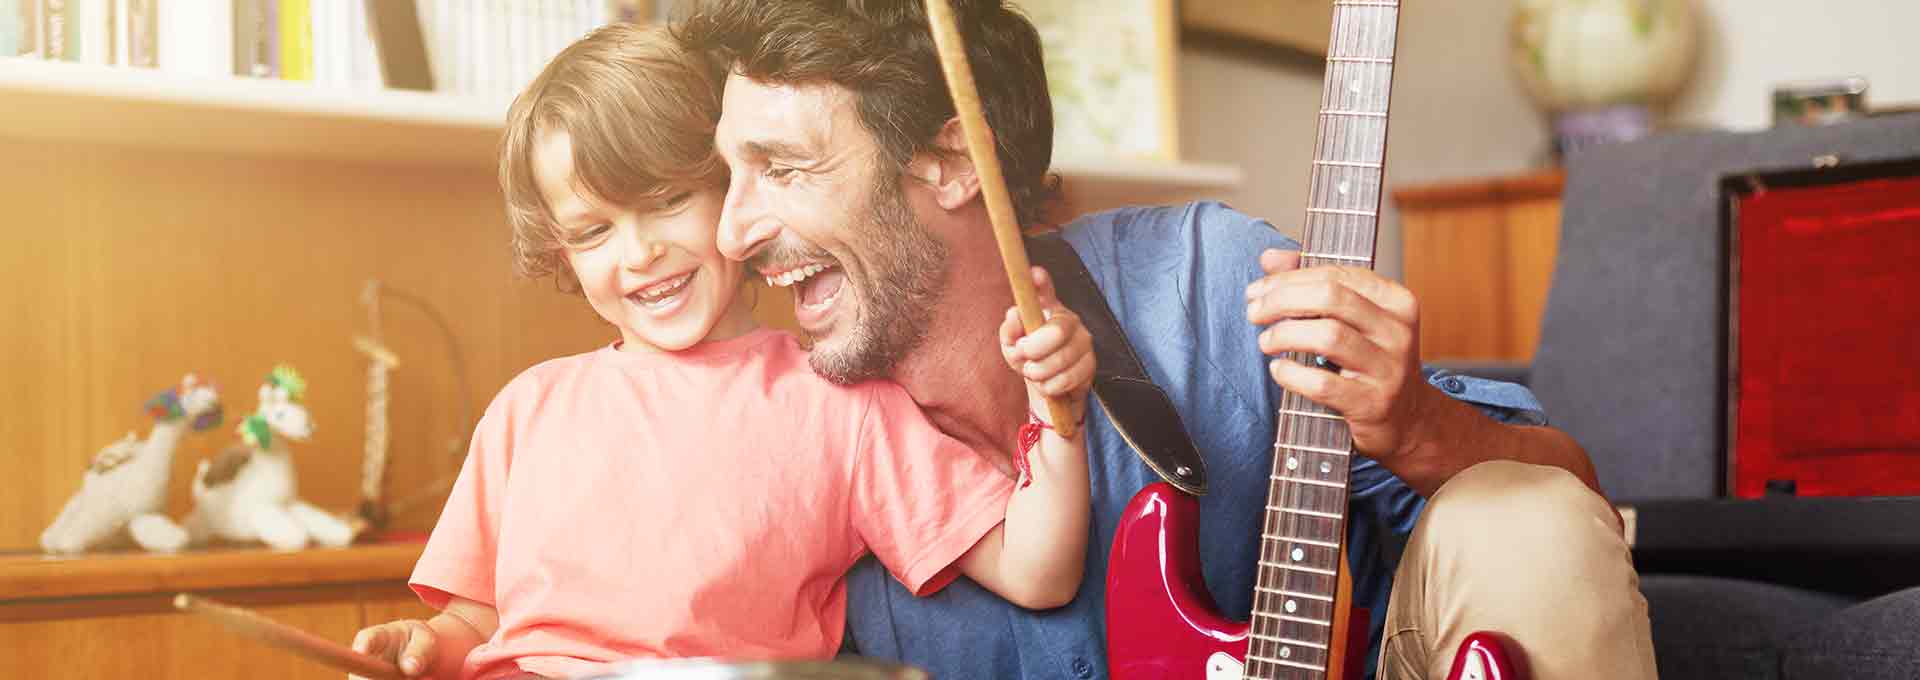 Vader met Bernafon Viron hoortoestellen speelt gitaar met zijn vijfjarige zoon die drumt en geniet van het moment.